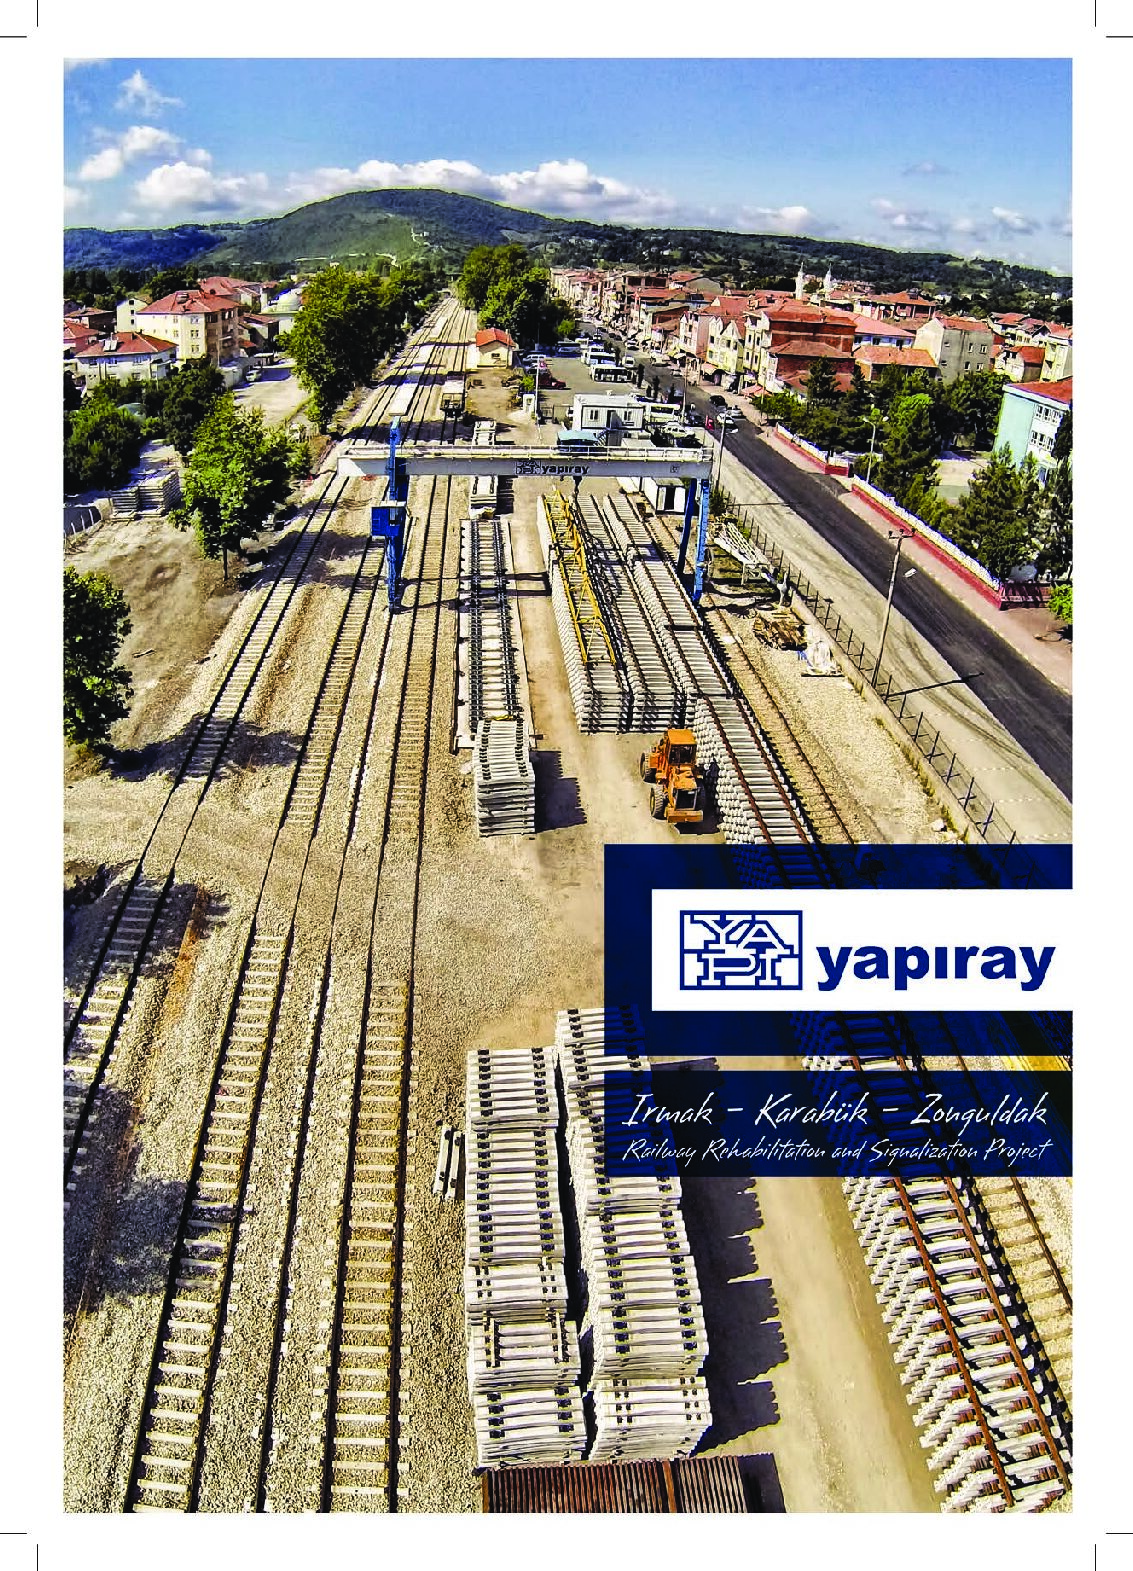 YAPIRAY – Irmak, Karabük and Zonguldak Project